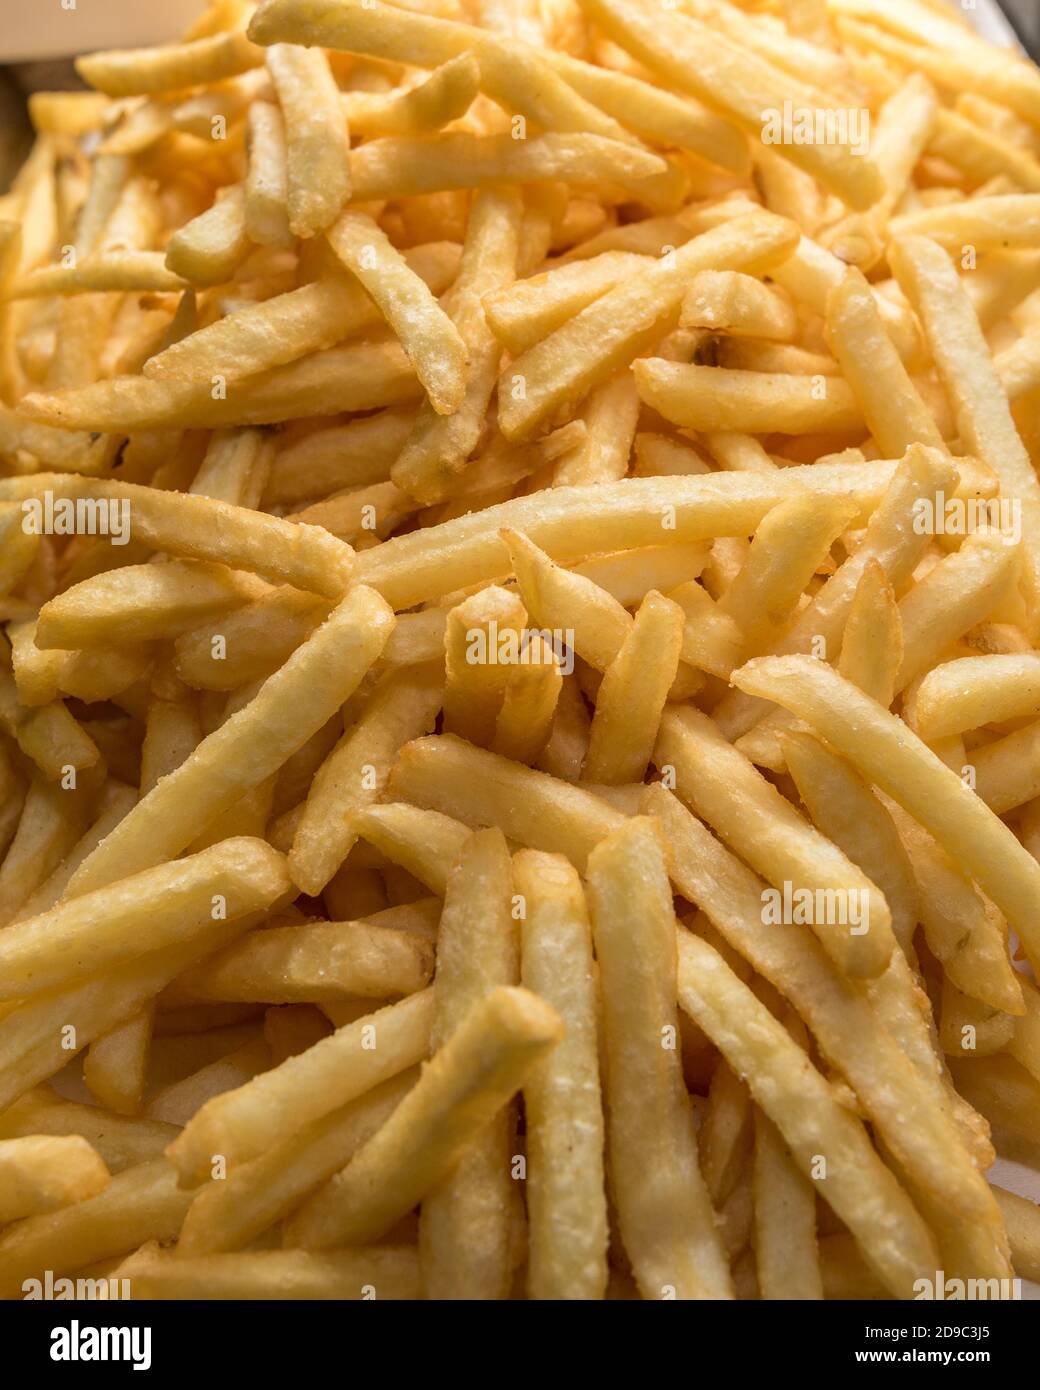 freshly fried golden fries Stock Photo